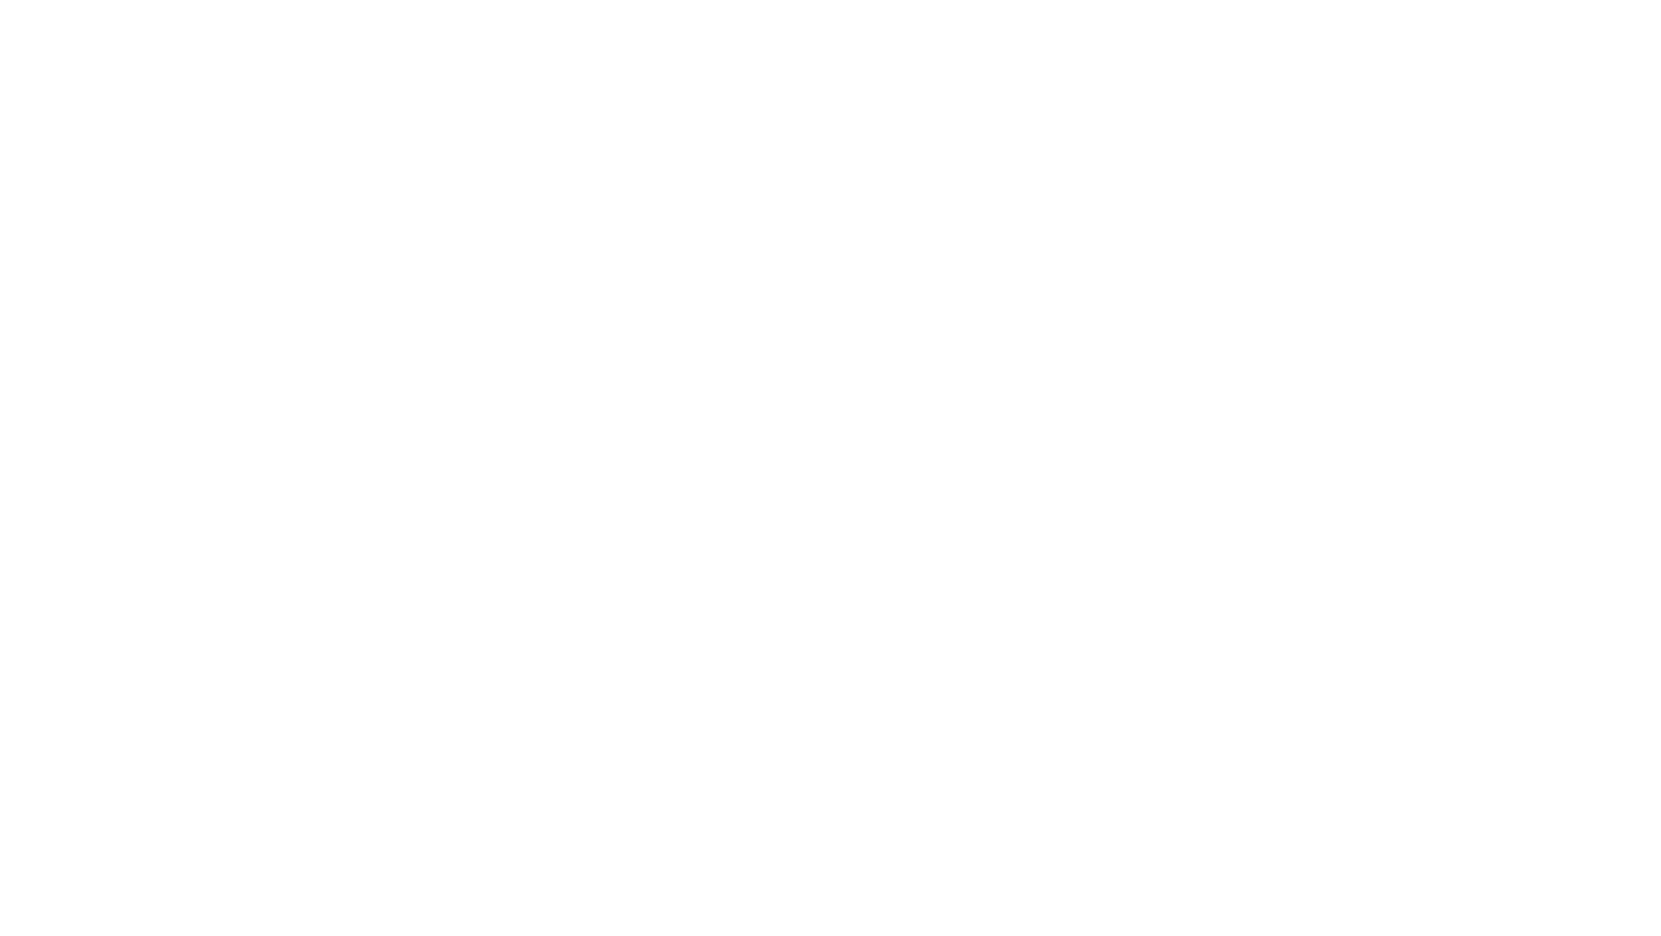 Logo Gipser Benz